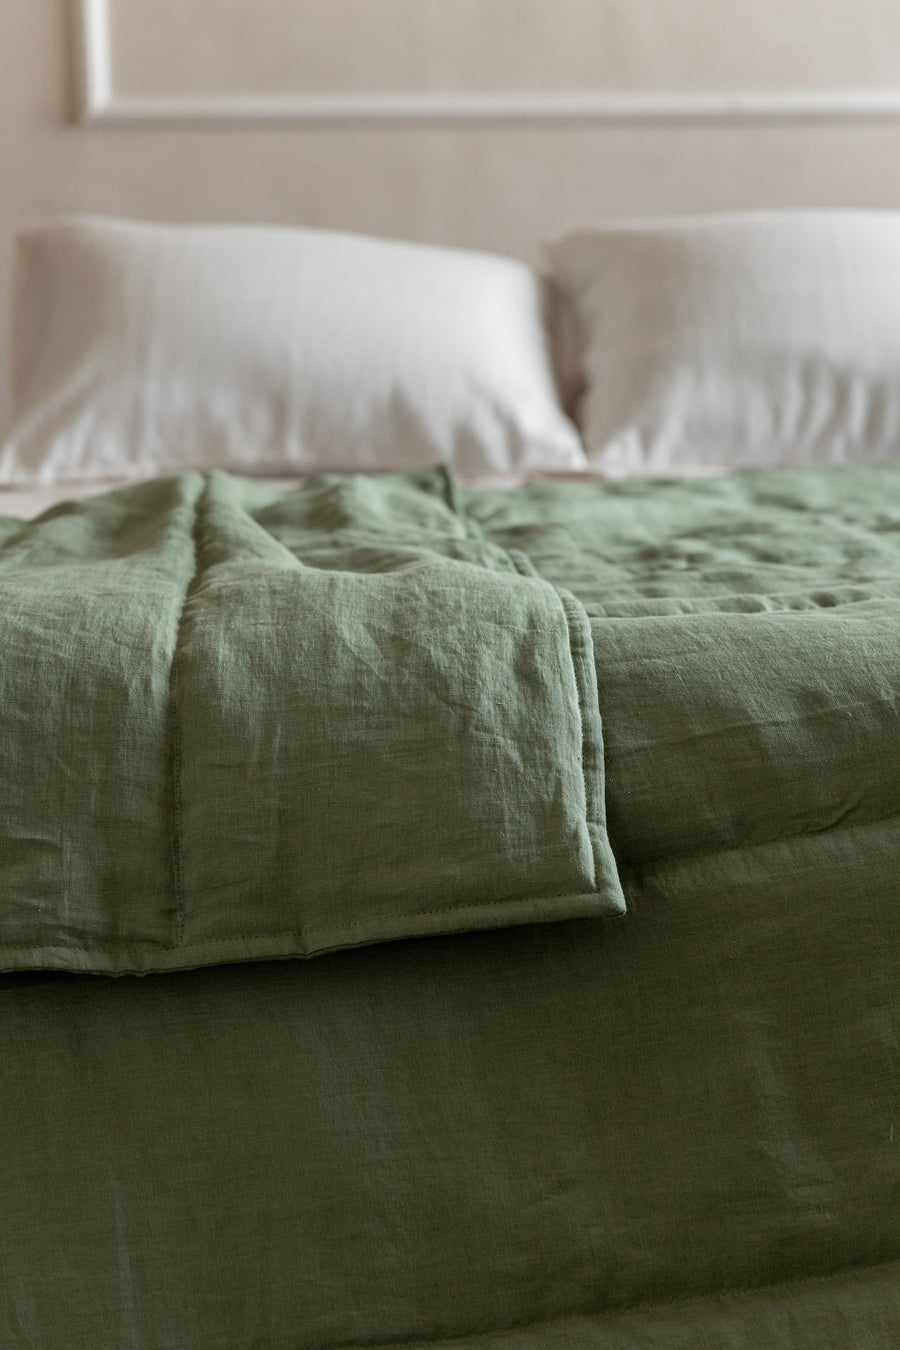 Natural Hemp Linen Blanket "light olive" quilt - linen fabric filled organic Hemp fiber - Full Twin Queen King Custom size